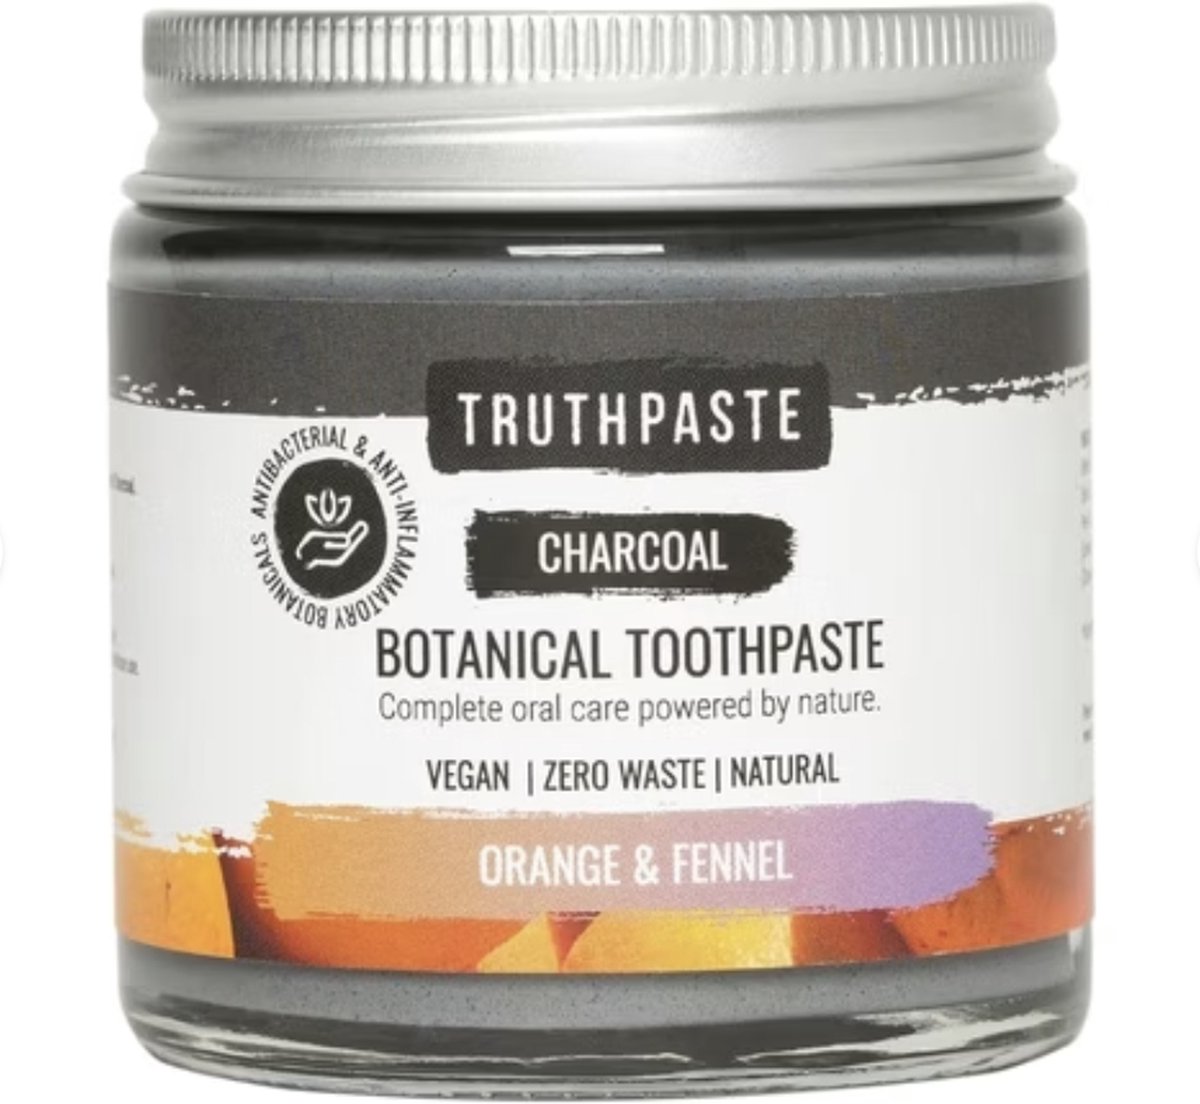 Natuurlijke tandpasta - Truthpaste Biologische & Organische tandpasta - 100 ml Sinaasappel & Venkel - Zero Waste en Cruelty Free